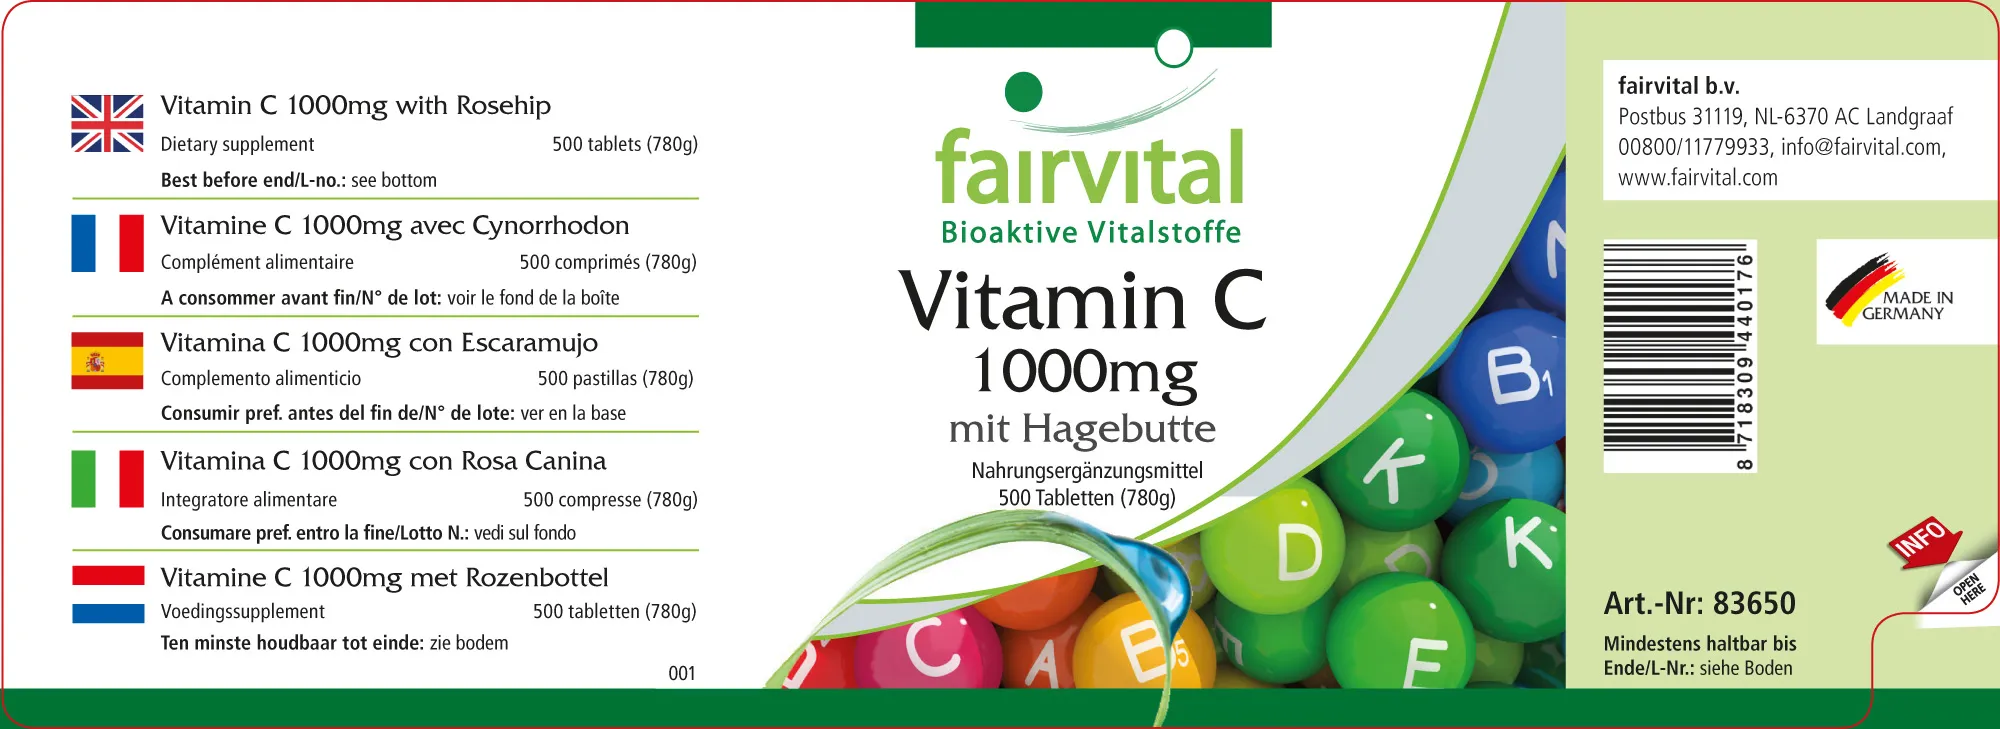 Vitamin C 1000mg mit Hagebutte